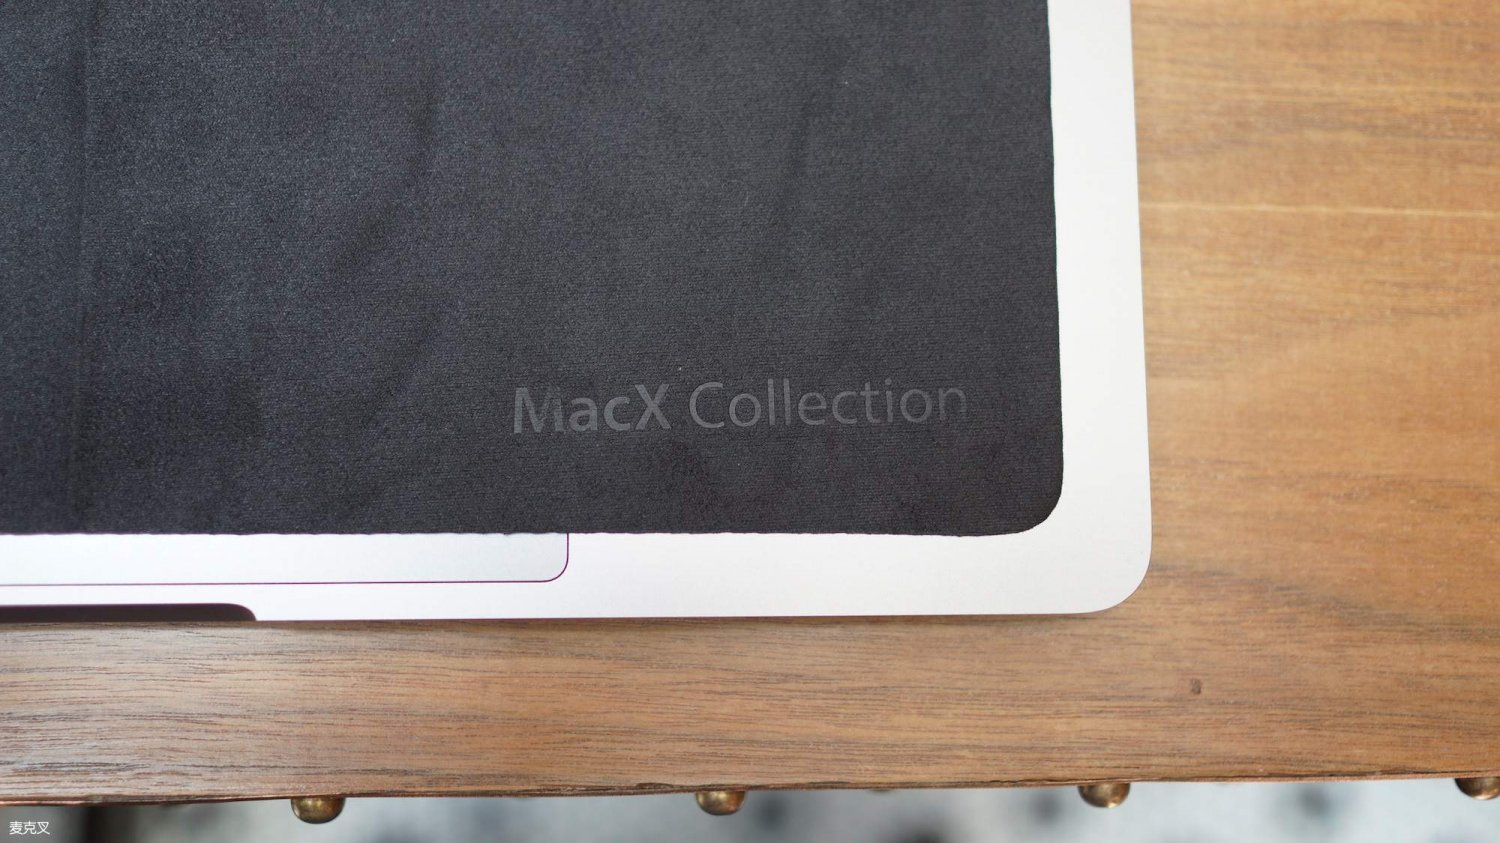 macbook air wipe clean